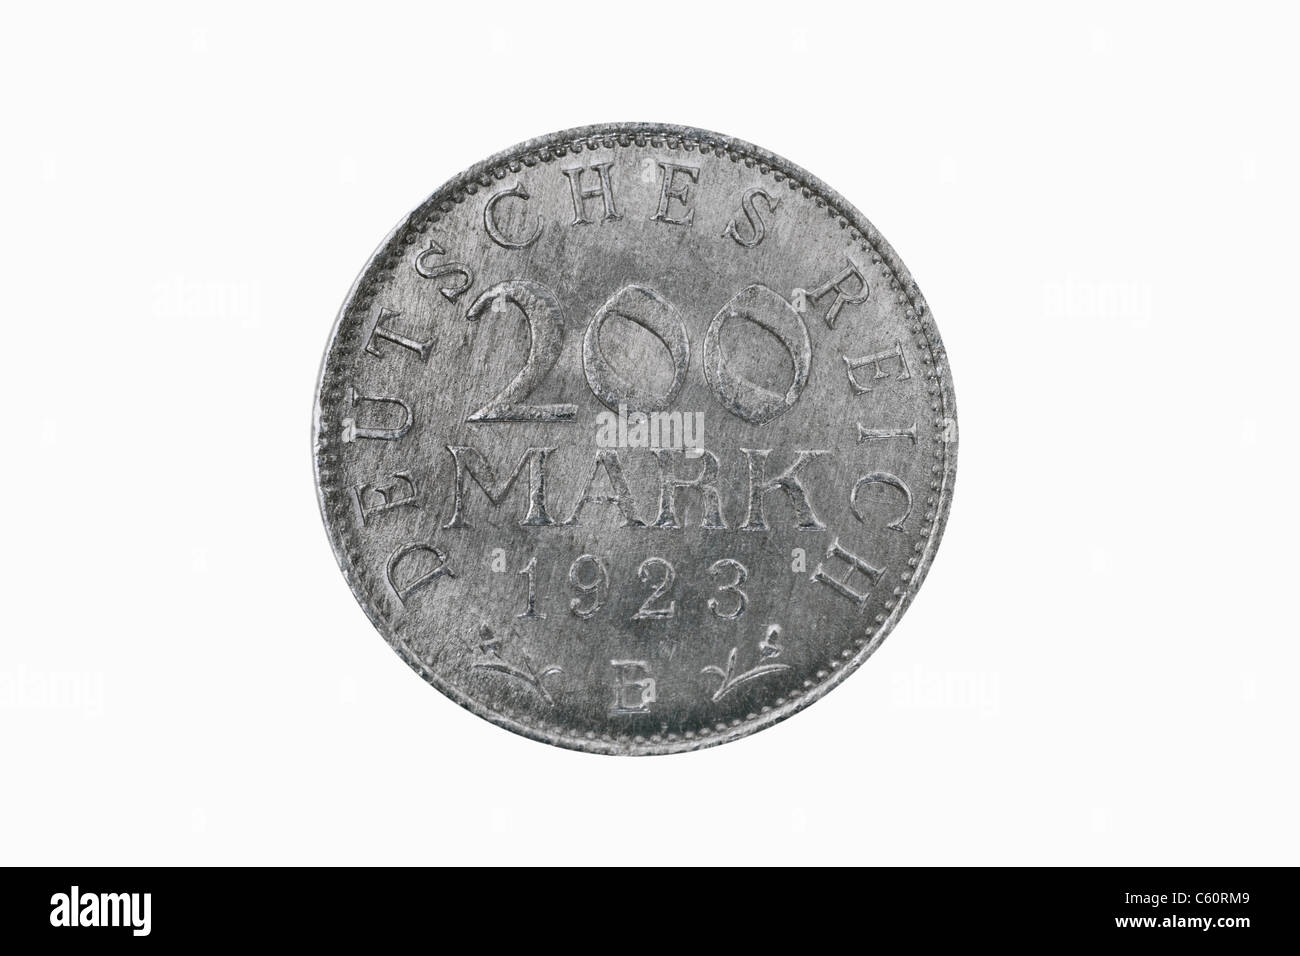 Detail-Foto einer 200 Mark-Münze des Deutschen Reiches aus dem Jahr 1923  Stockfotografie - Alamy